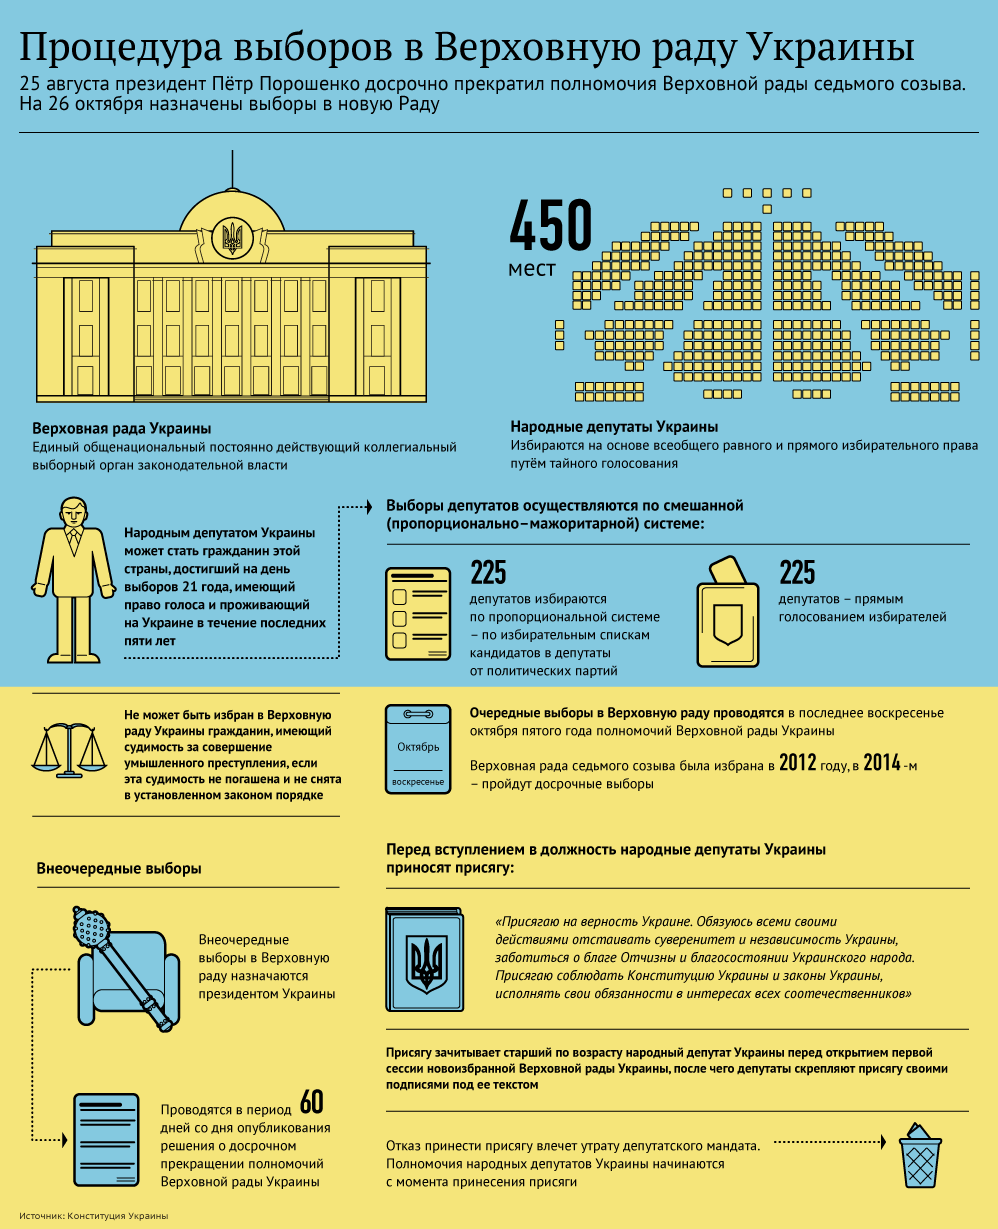 Операция выборов в Верховную раду, Инфографика